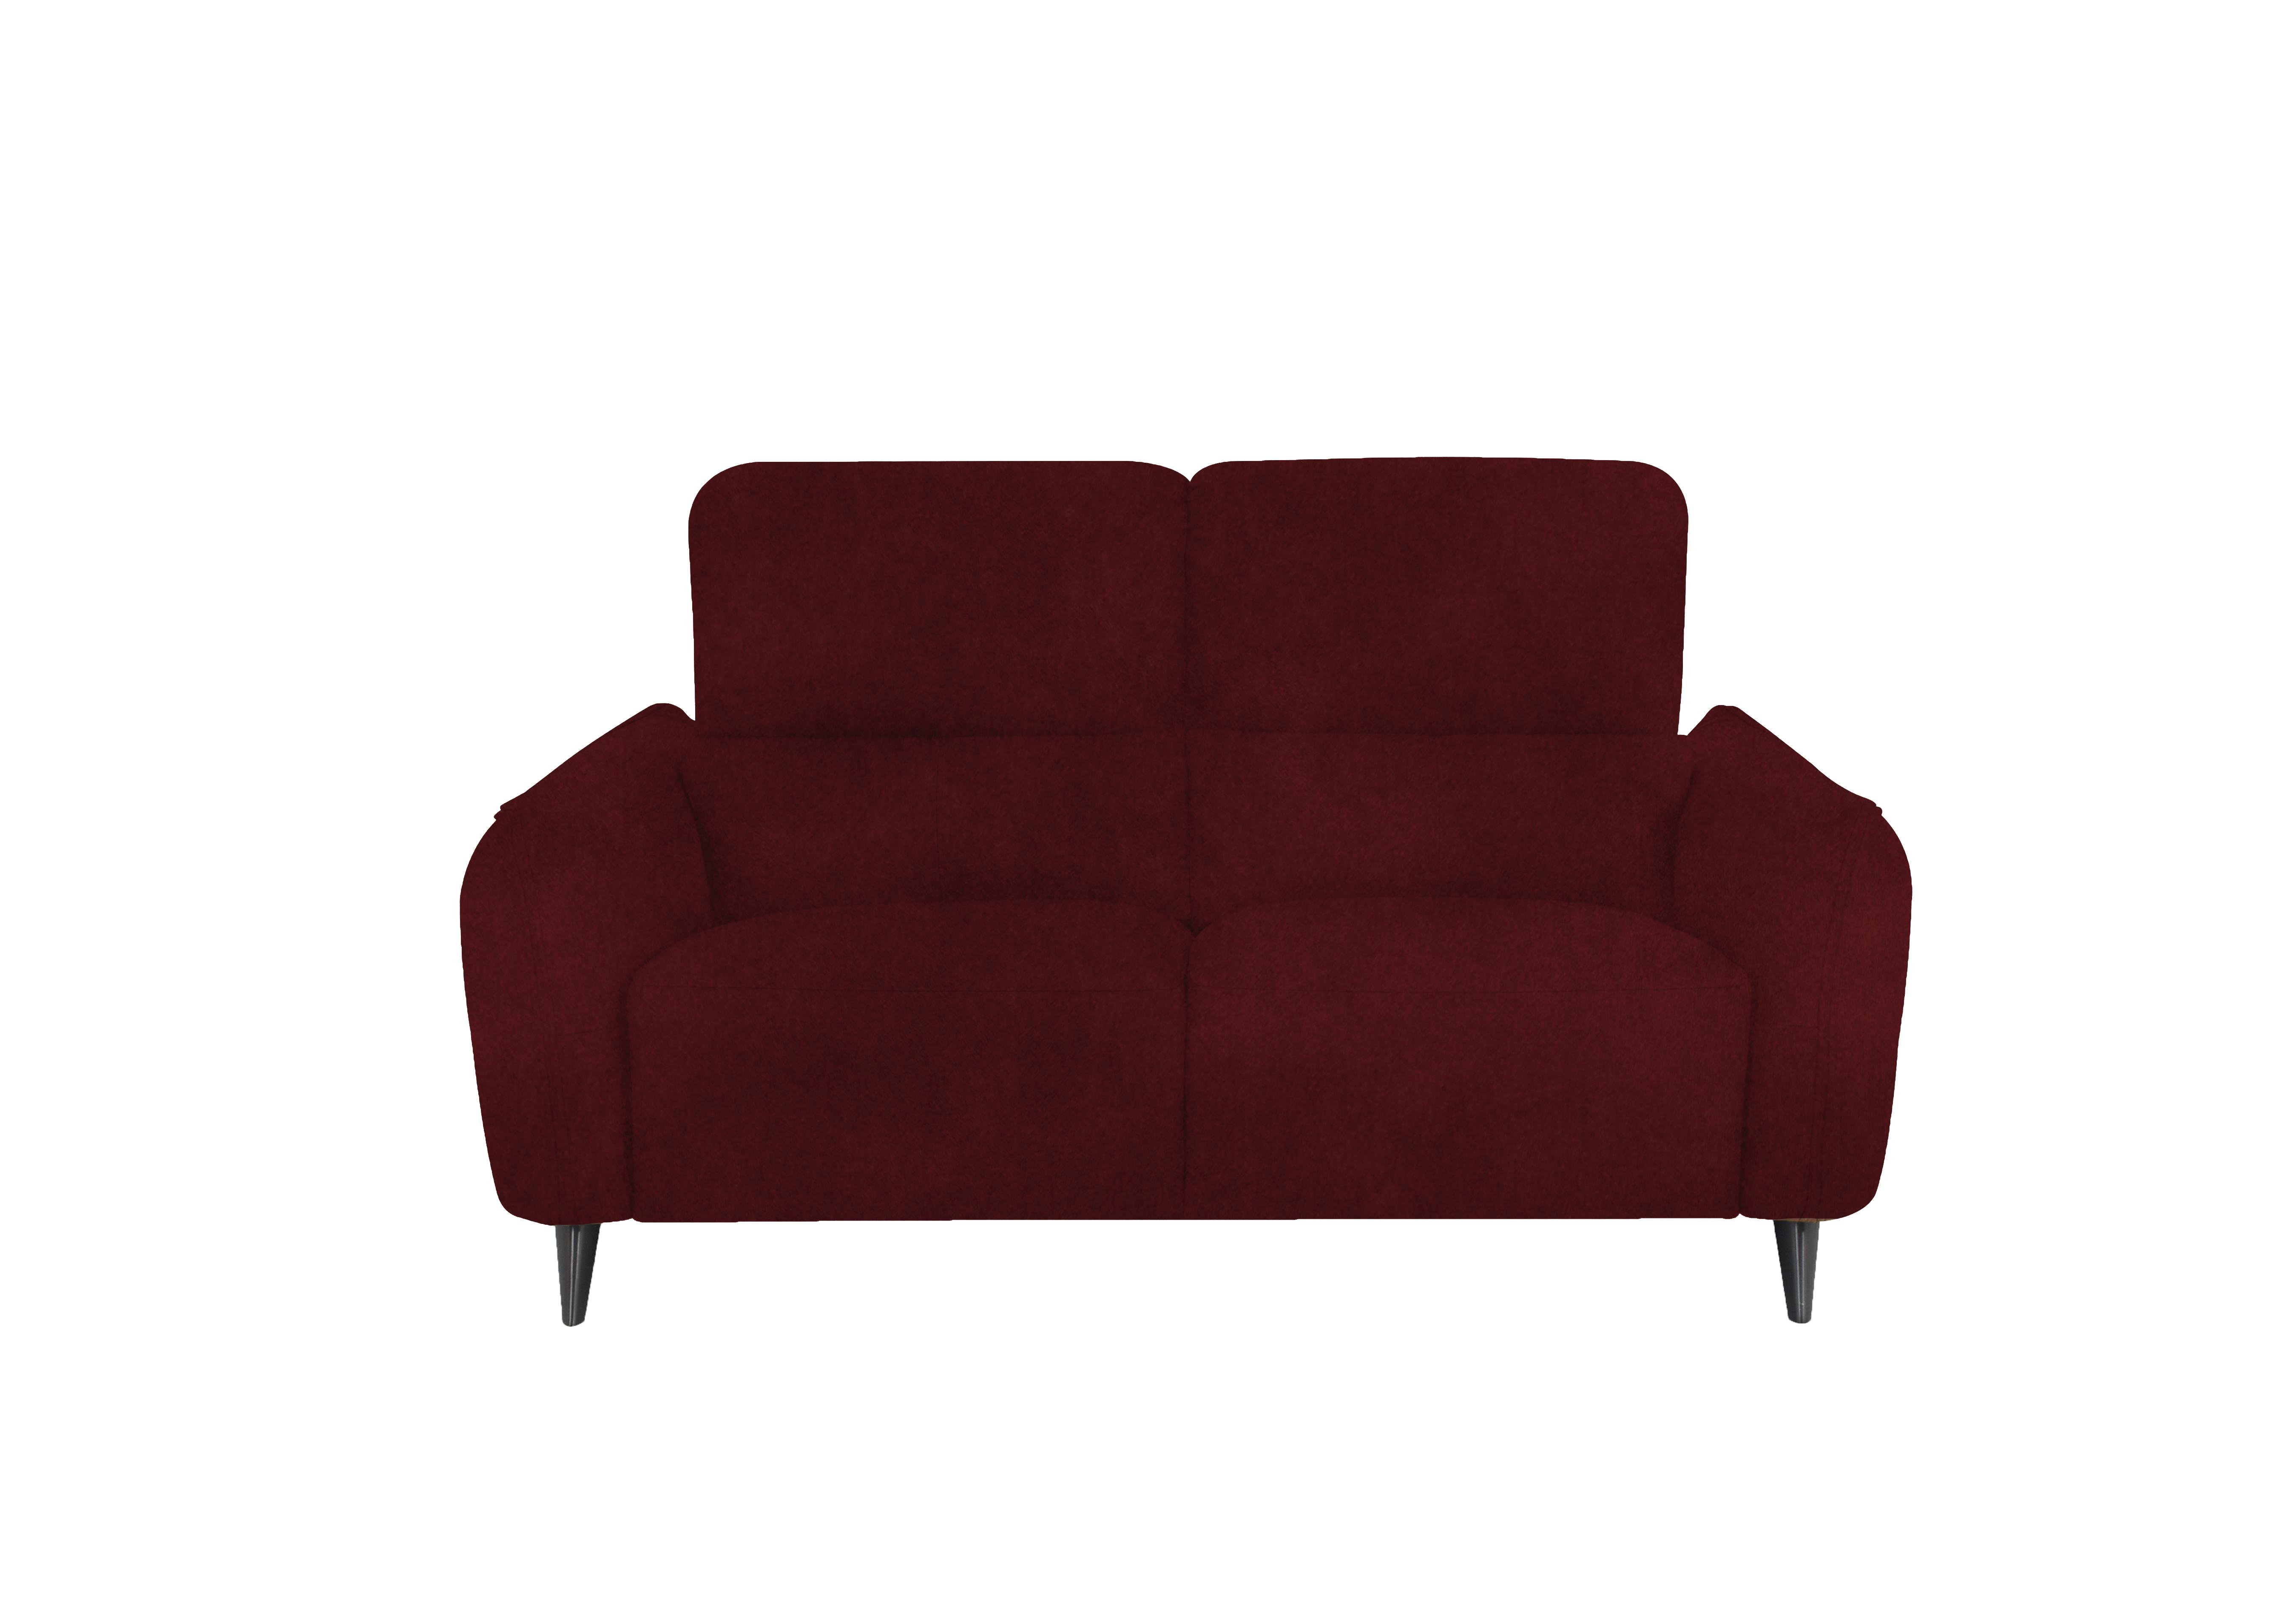 Maddox 2.5 Seater Fabric Sofa in Fab-Meg-R65 Burgundy on Furniture Village